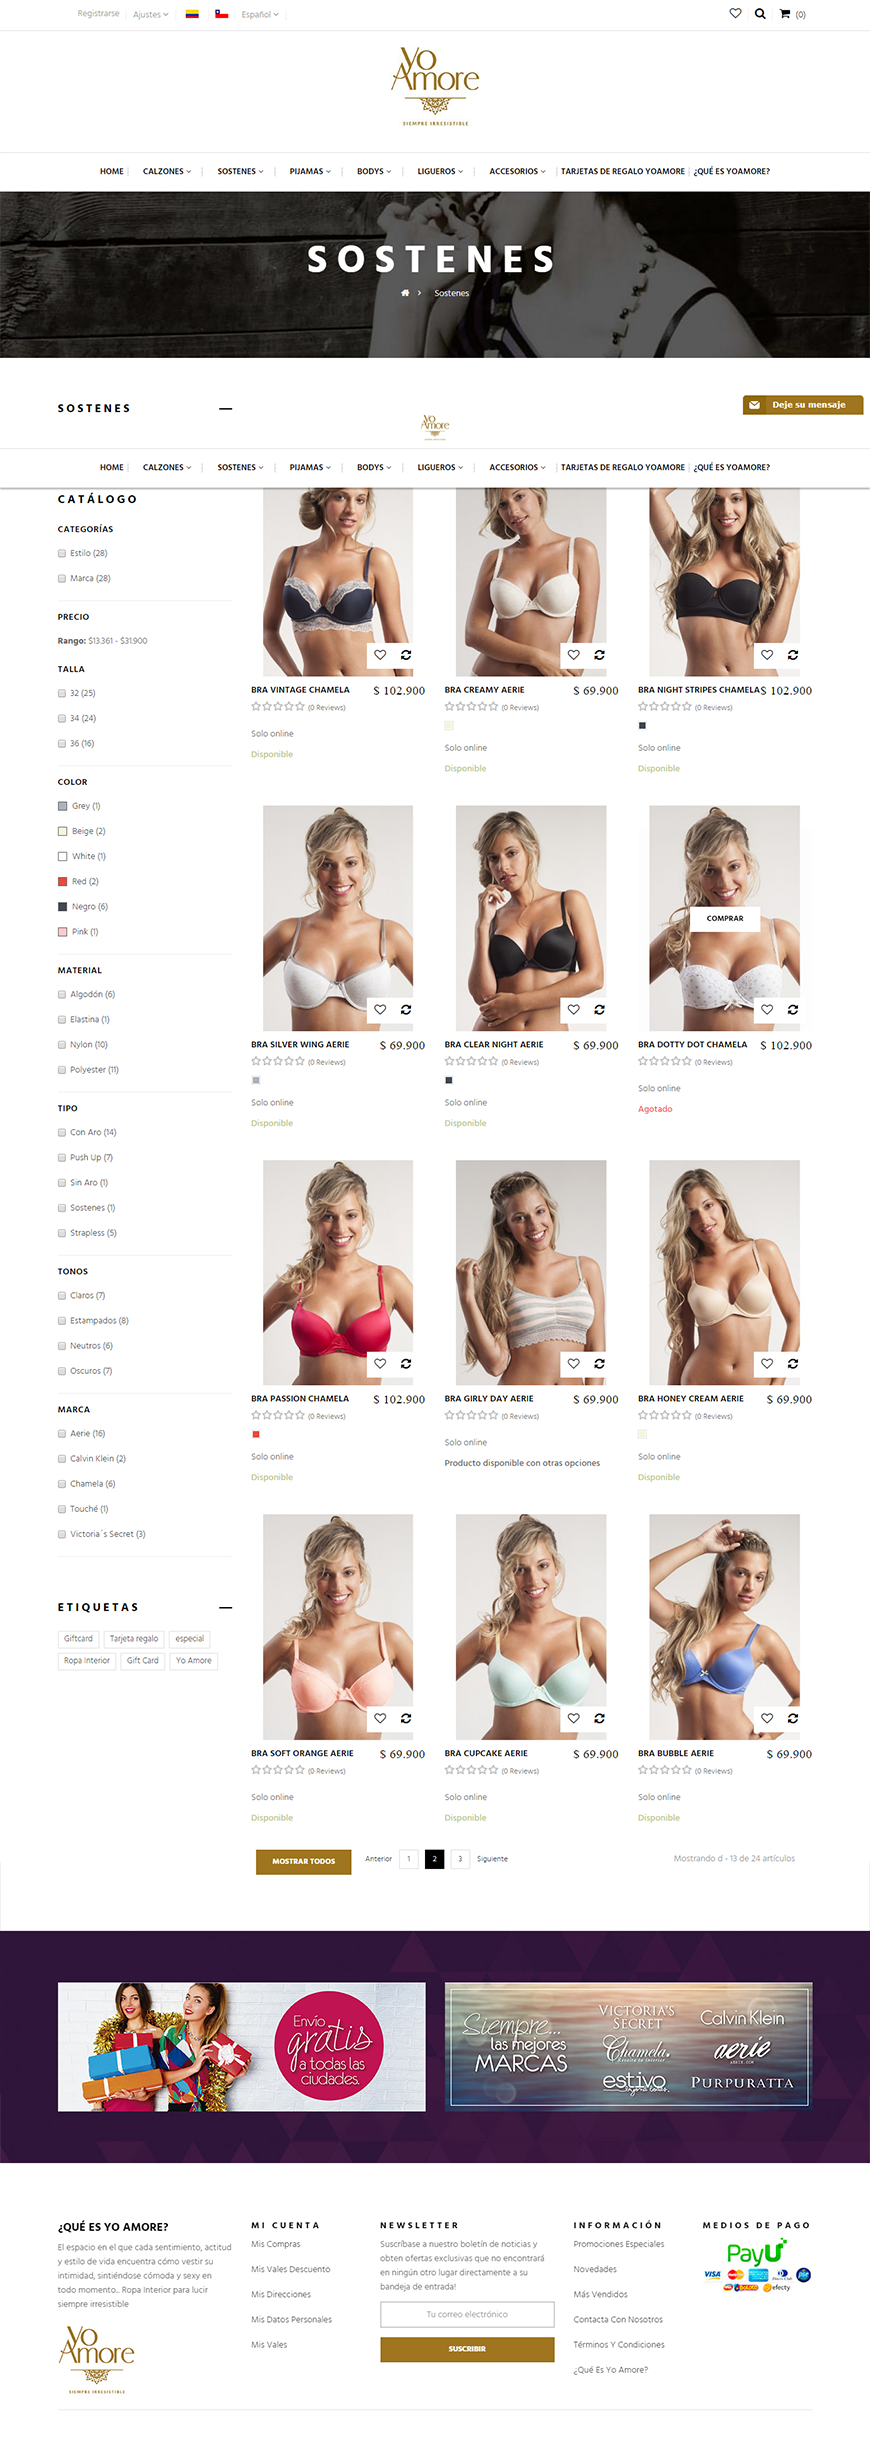 Tienda Online especializada en la venta de ropa interior para mujeres